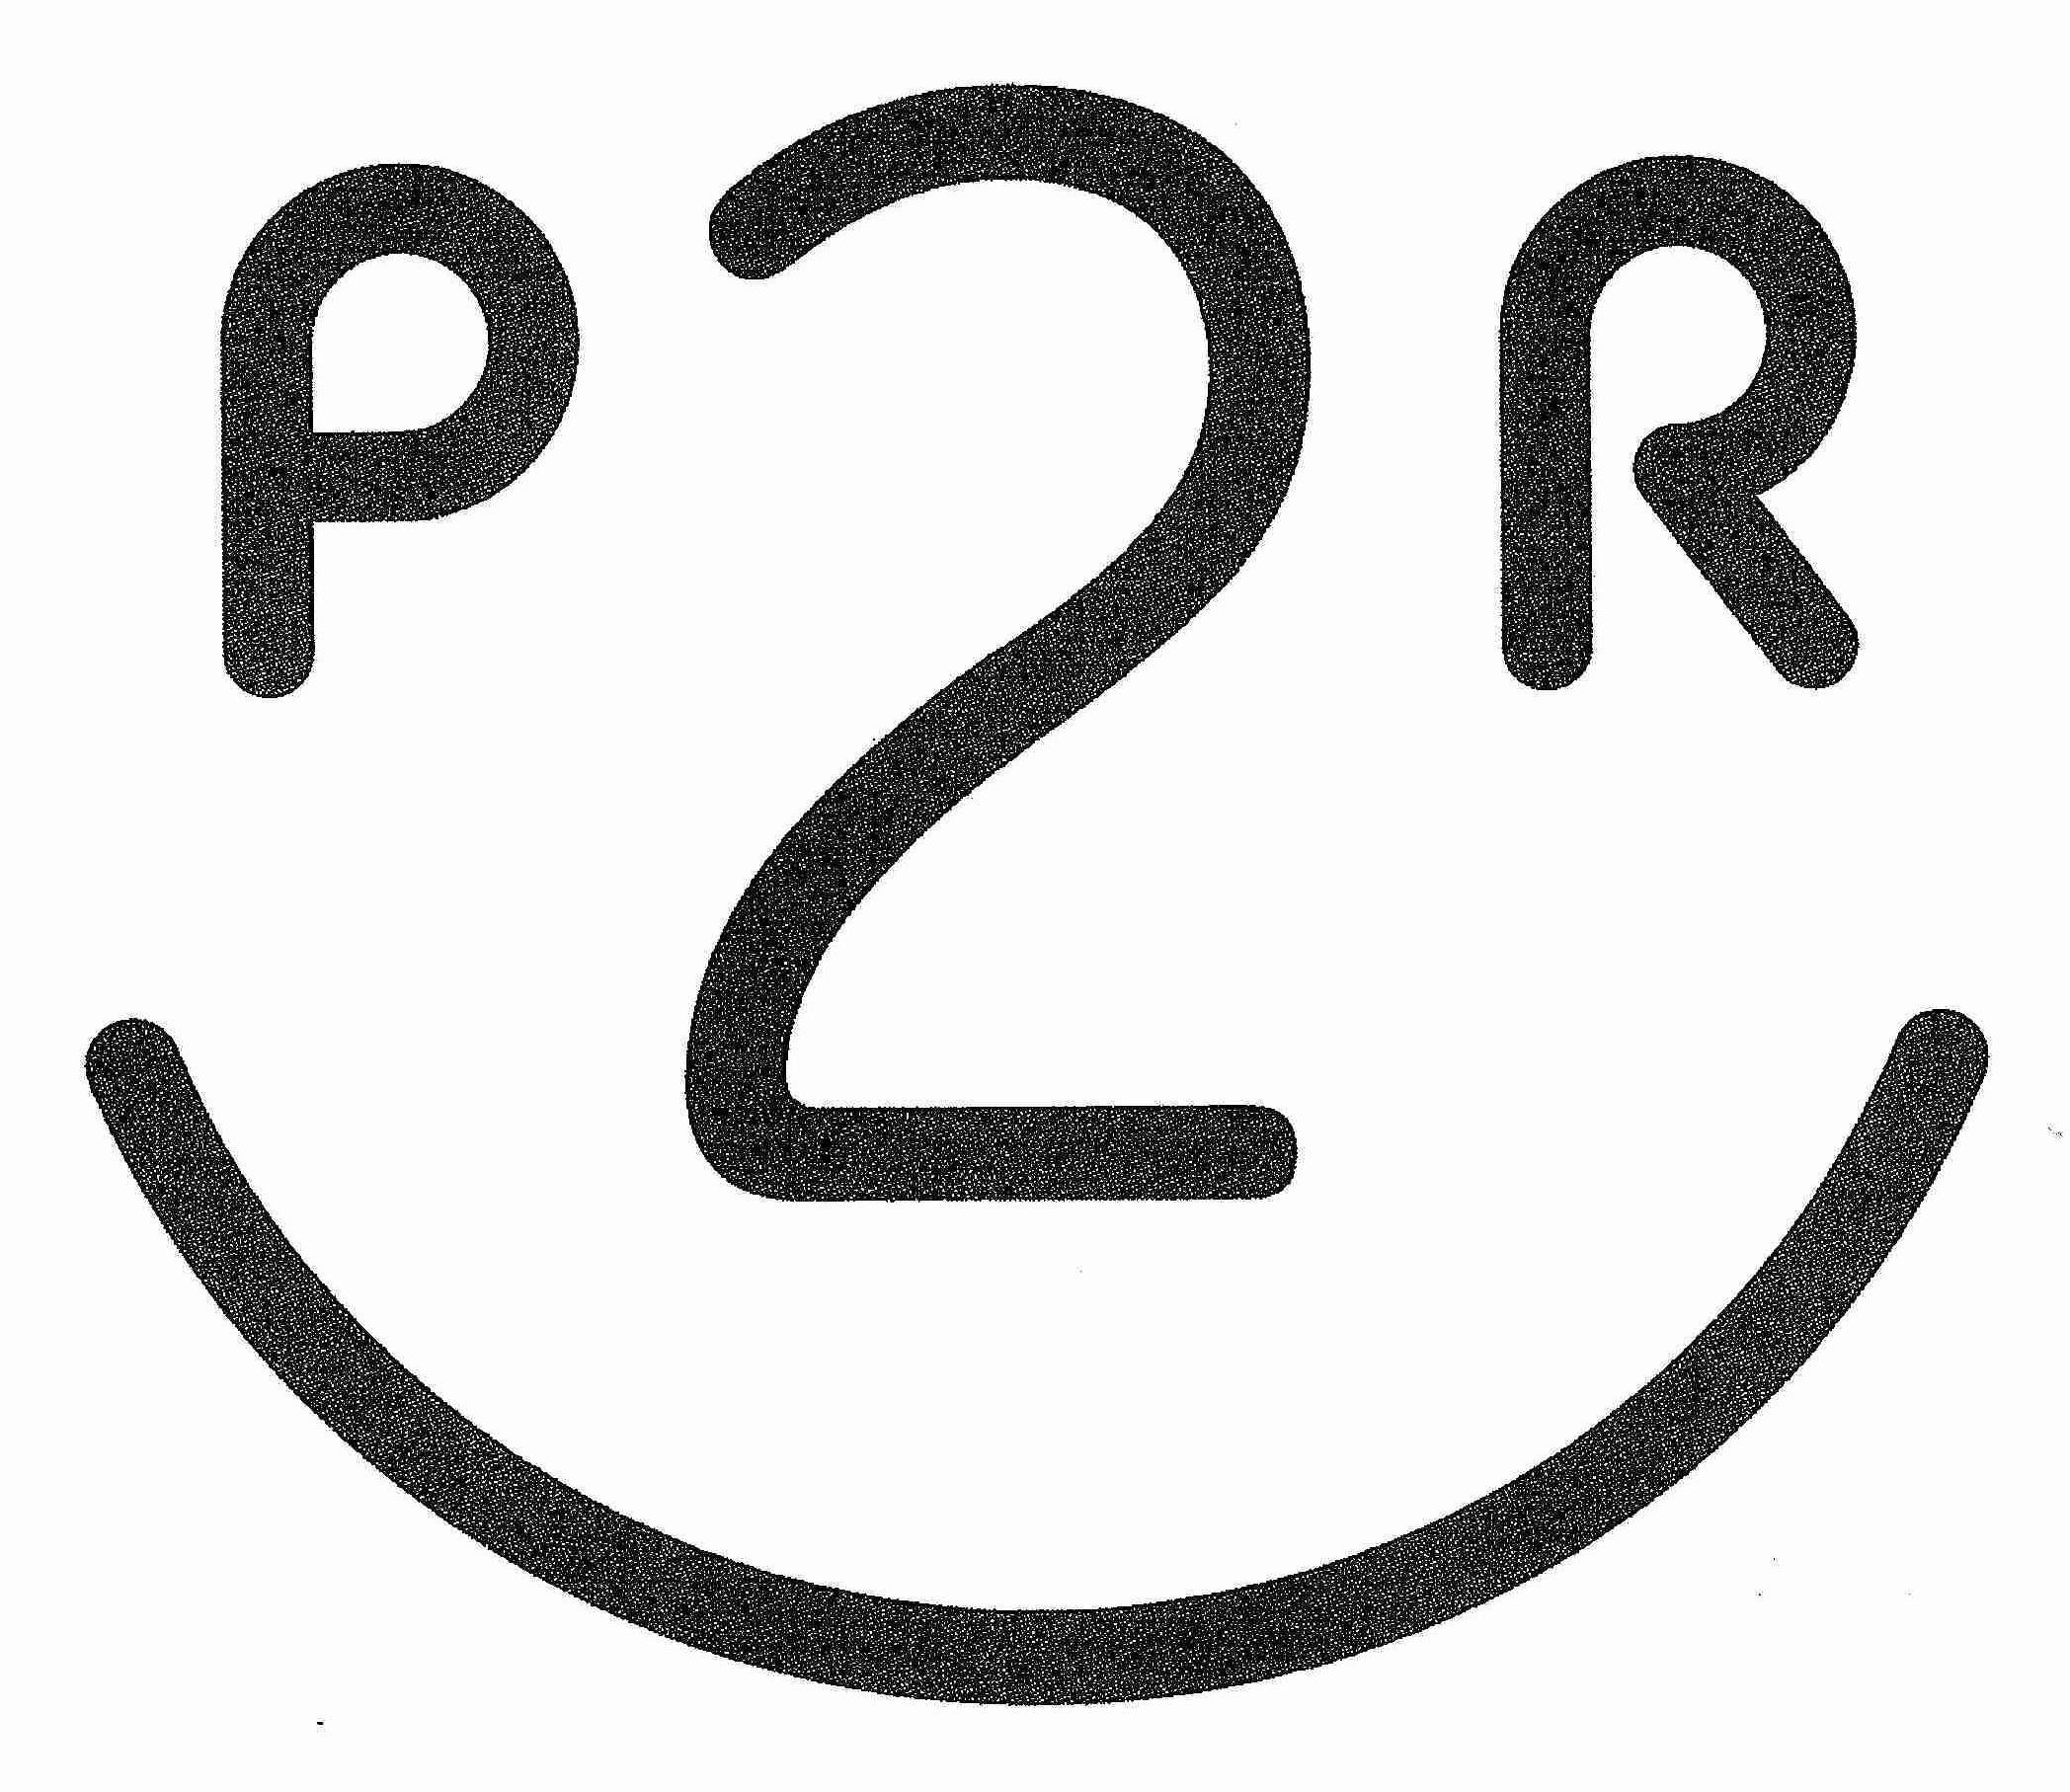 P2R